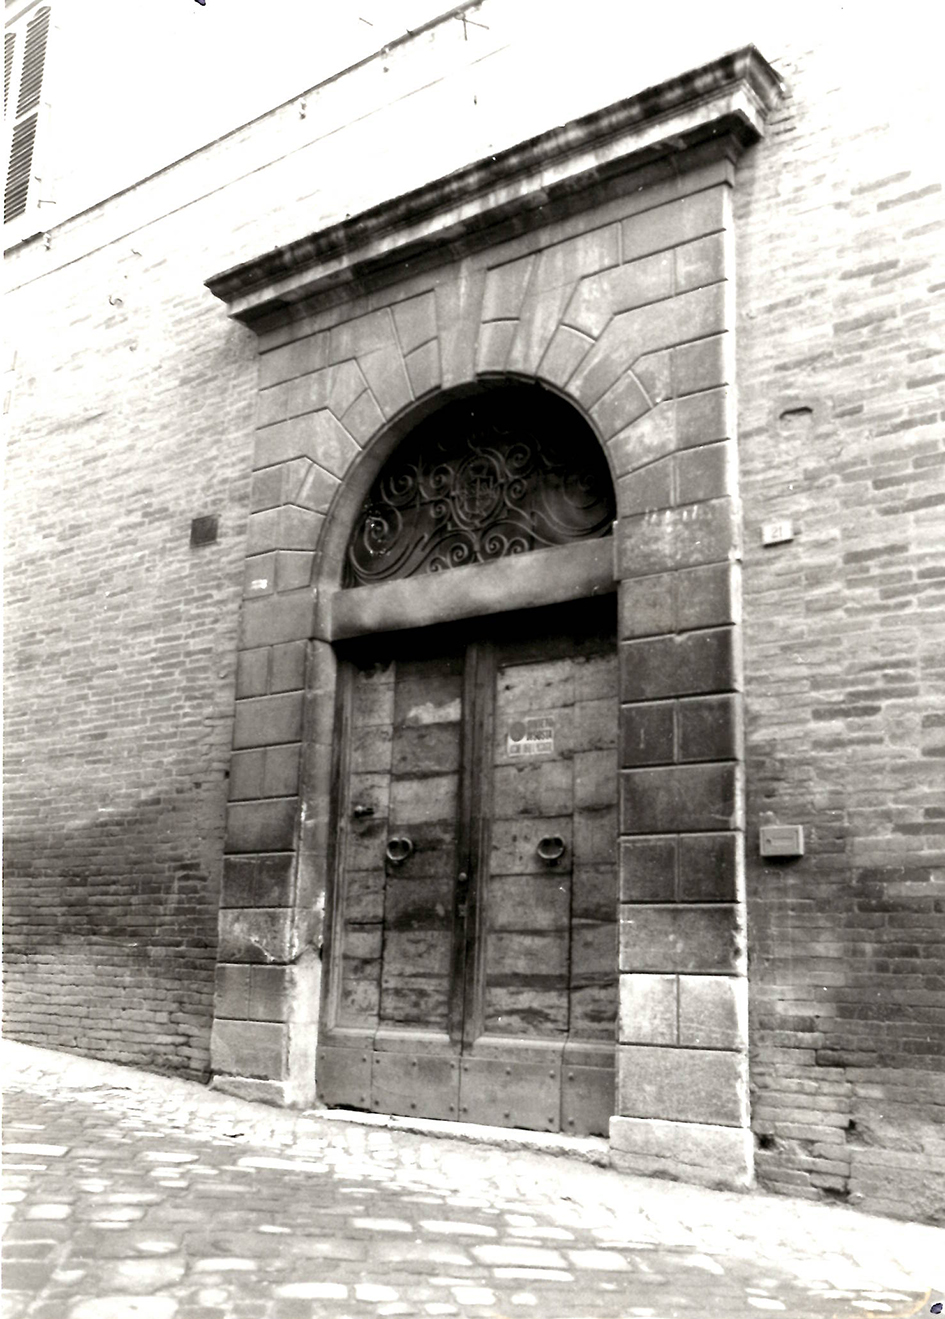 Palazzo Servanzi Collio (palazzo, signorile) - San Severino Marche (MC) 